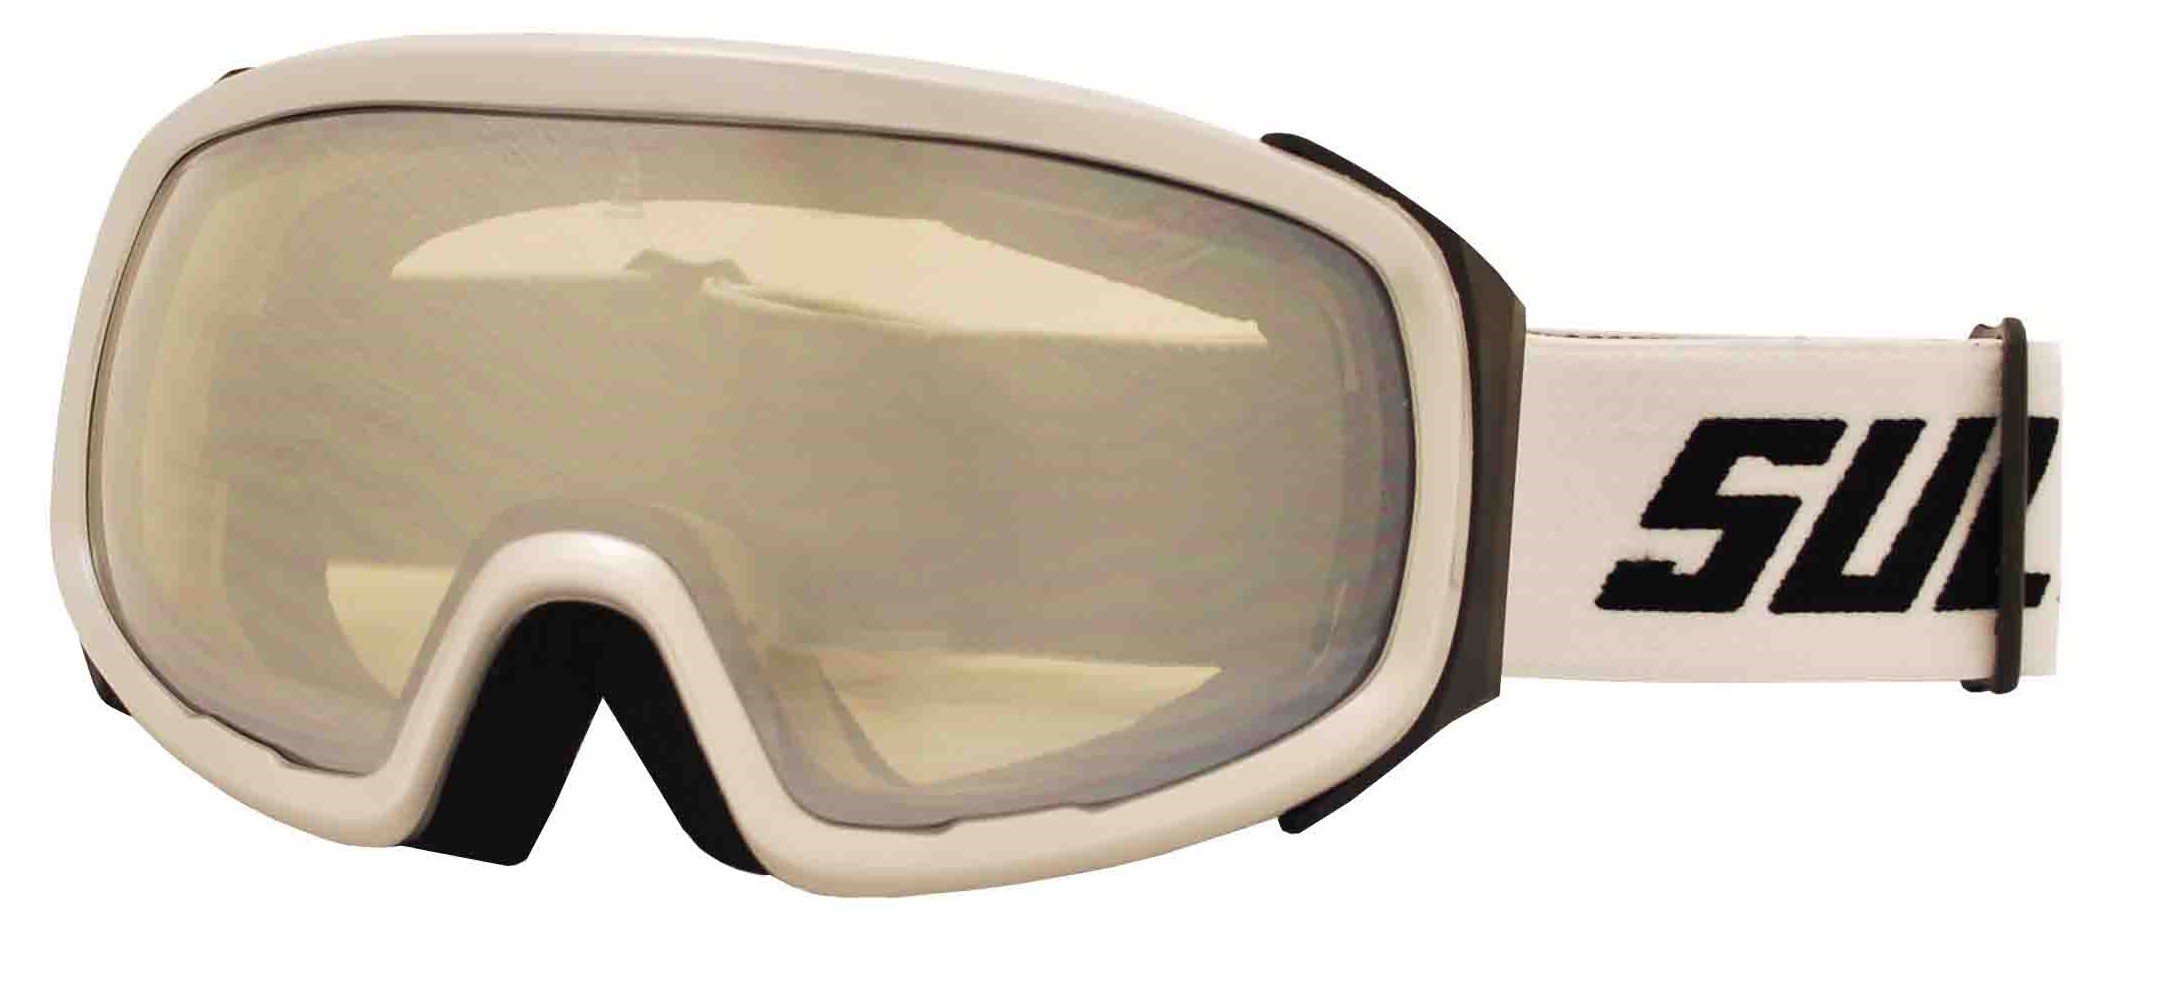 Lyžařské brýle Sulov Pro stříbrné